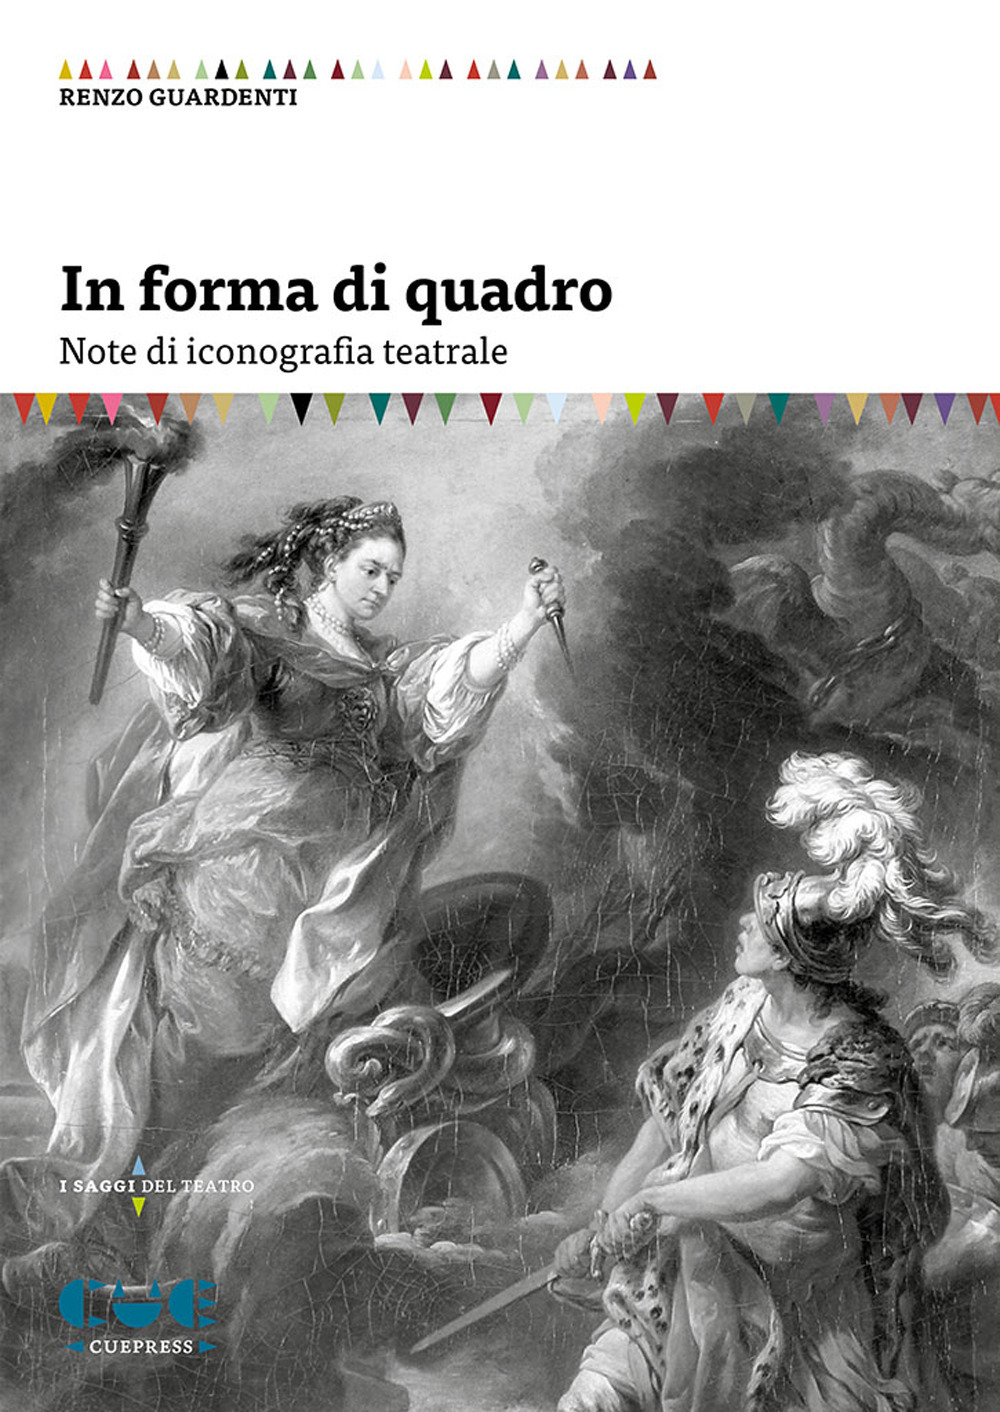 Libri Renzo Guardenti - In Forma Di Quadro. Note Di Iconografia Teatrale NUOVO SIGILLATO, EDIZIONE DEL 04/11/2020 SUBITO DISPONIBILE